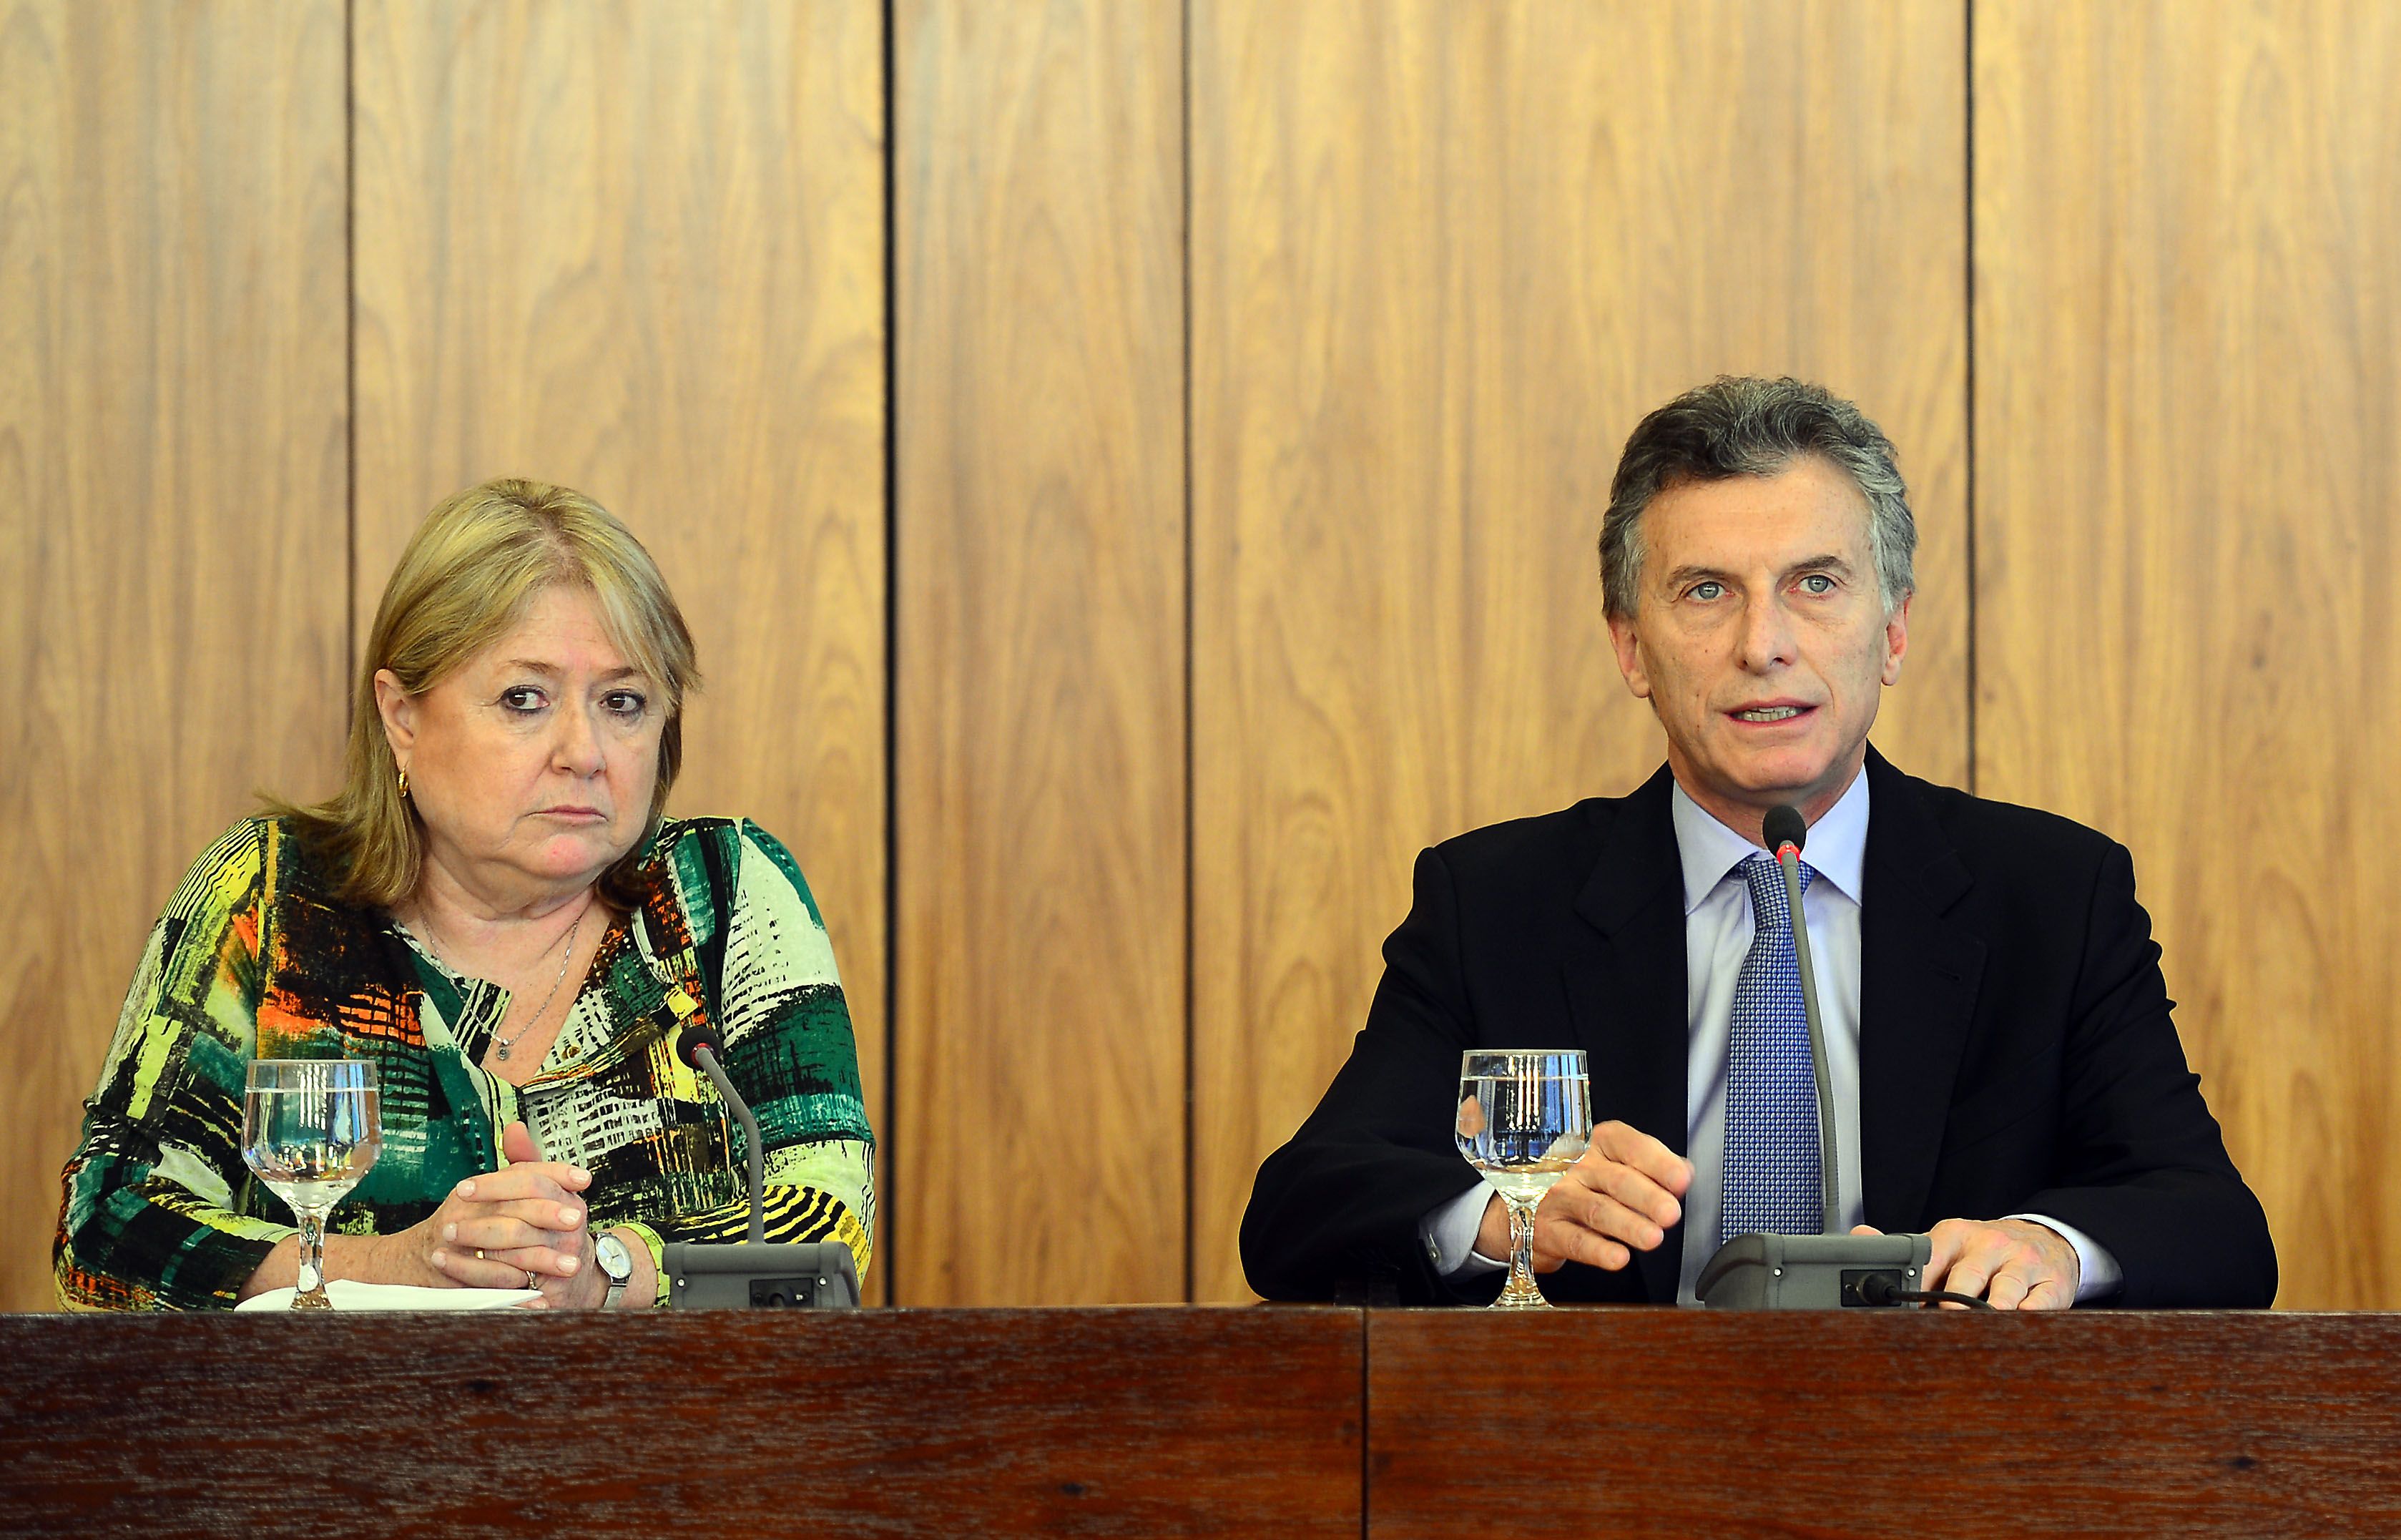 Acusan a Canciller argentina de financiar postulación a la ONU con fondos públicos